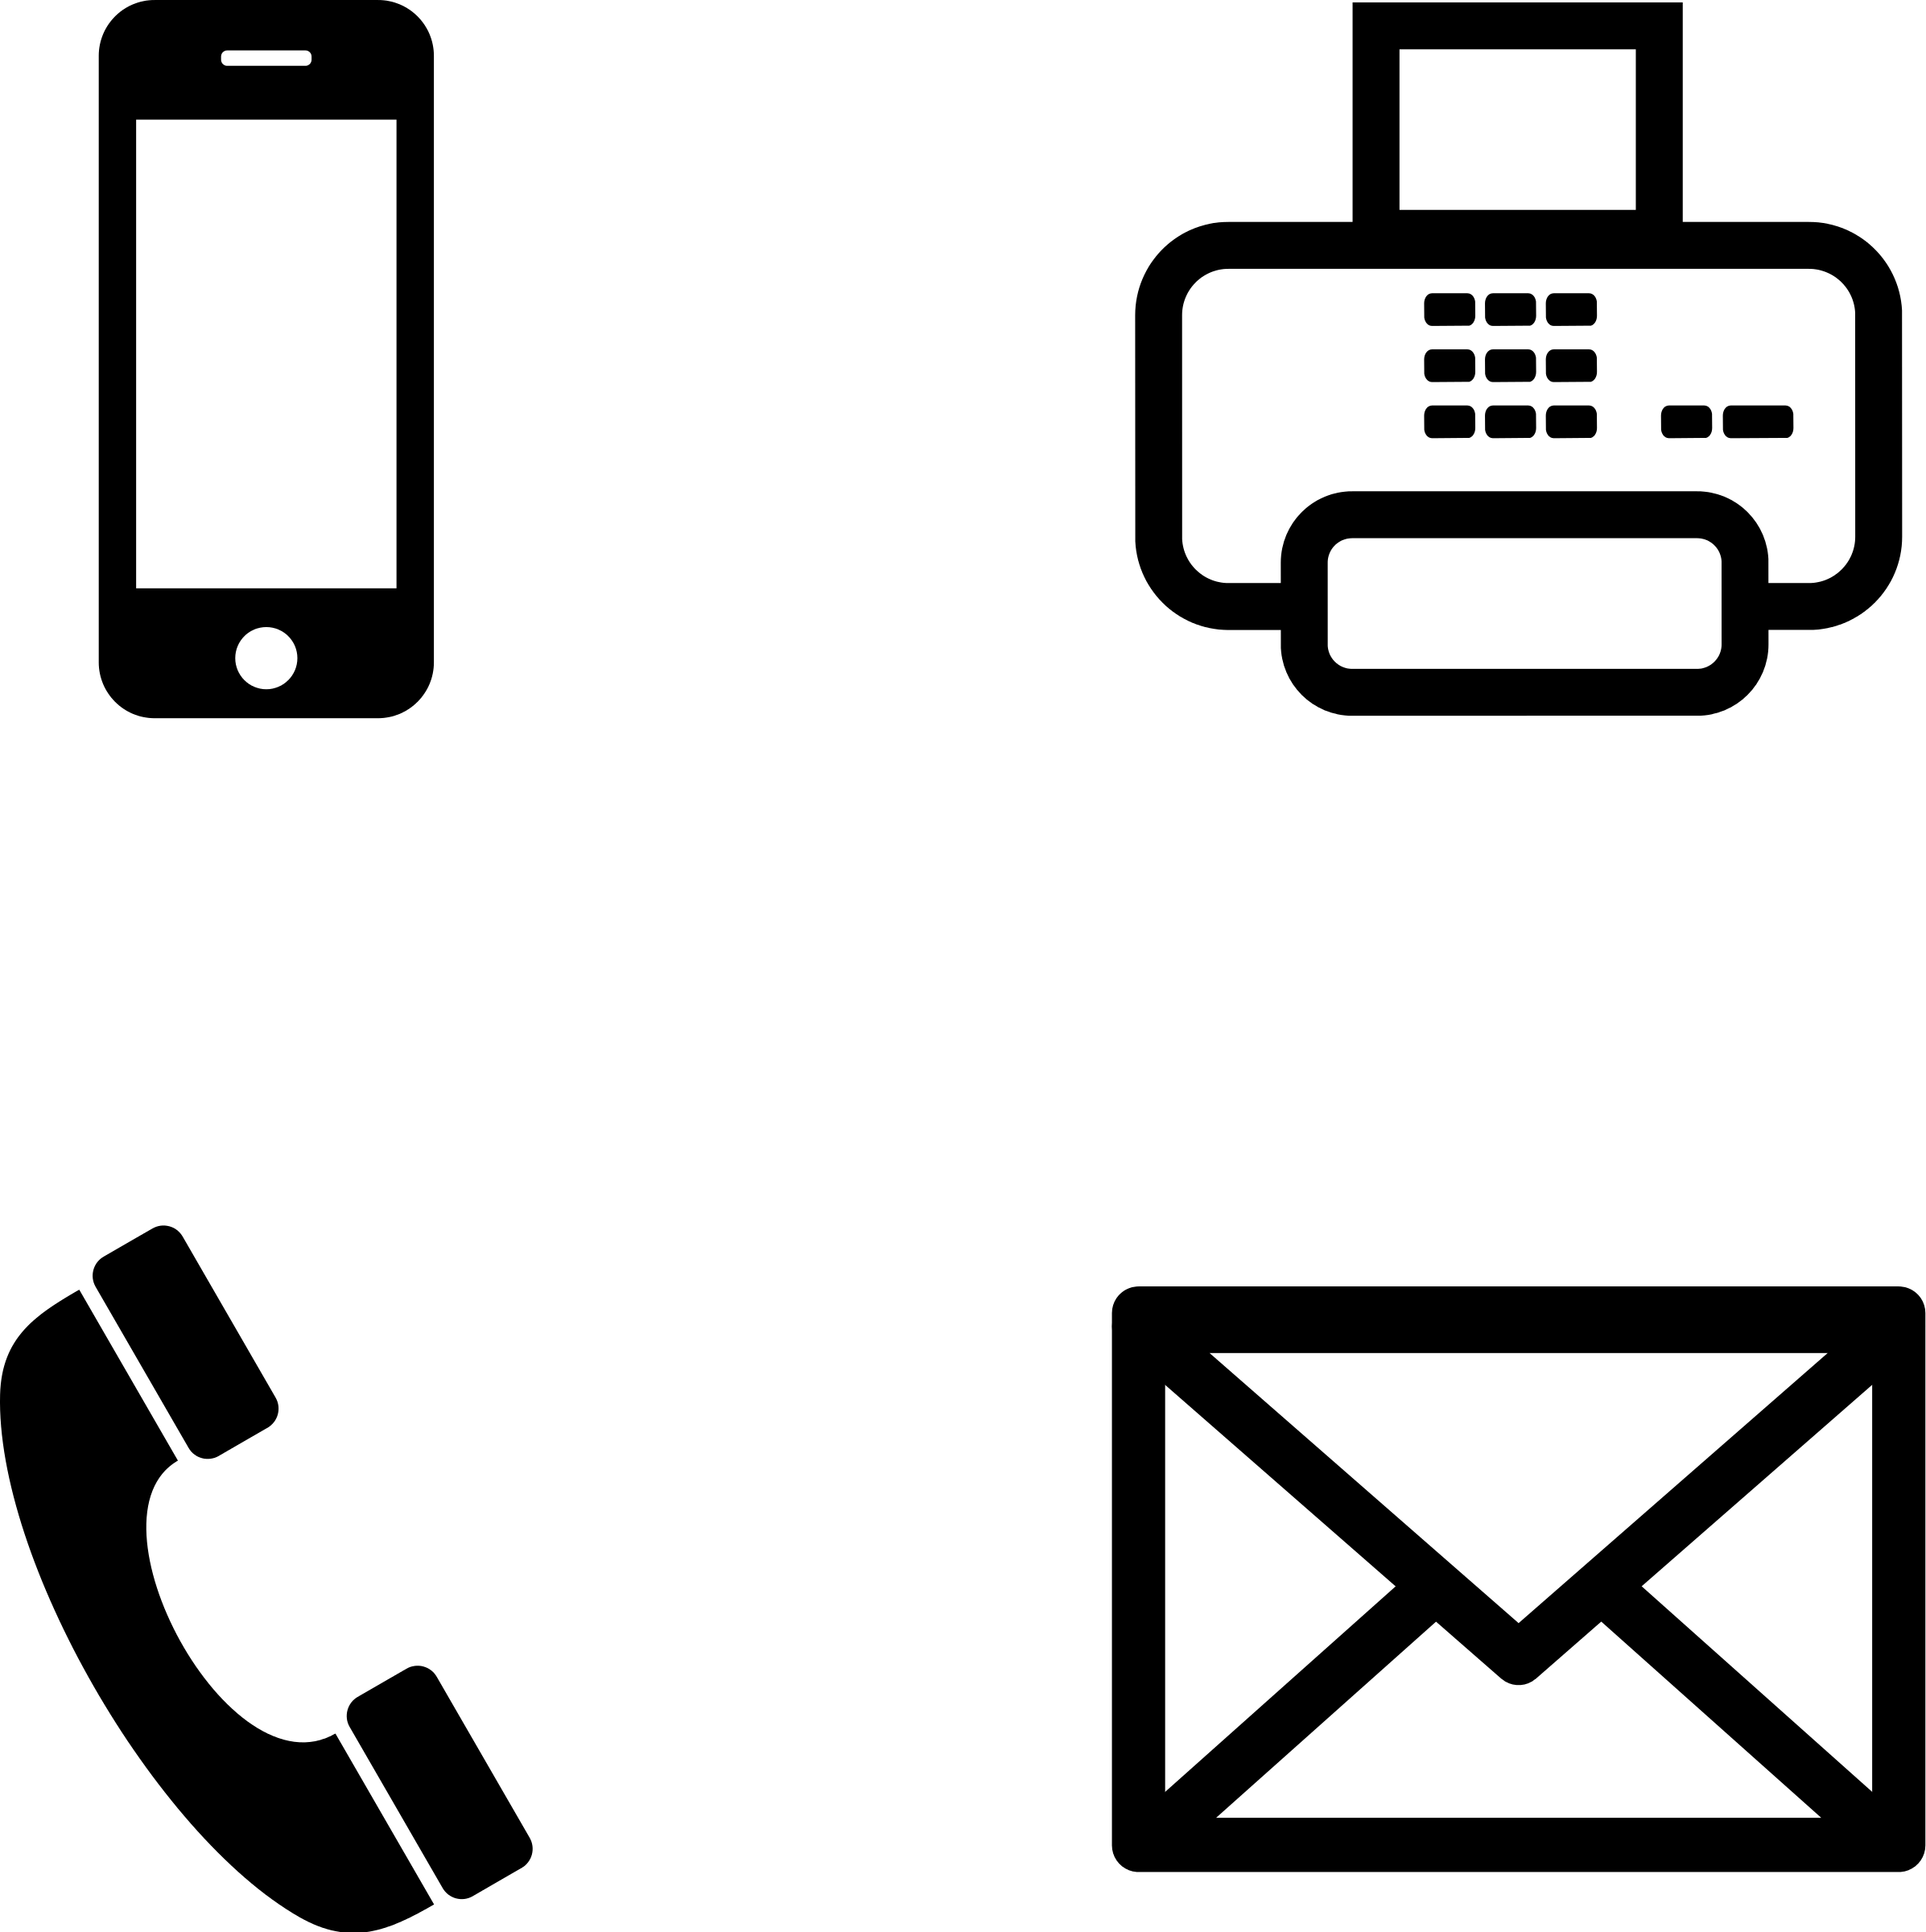 Телефона post. Значок телефона. Символ телефона для визитки. Значок телефона и почты. Векторное изображение телефона.